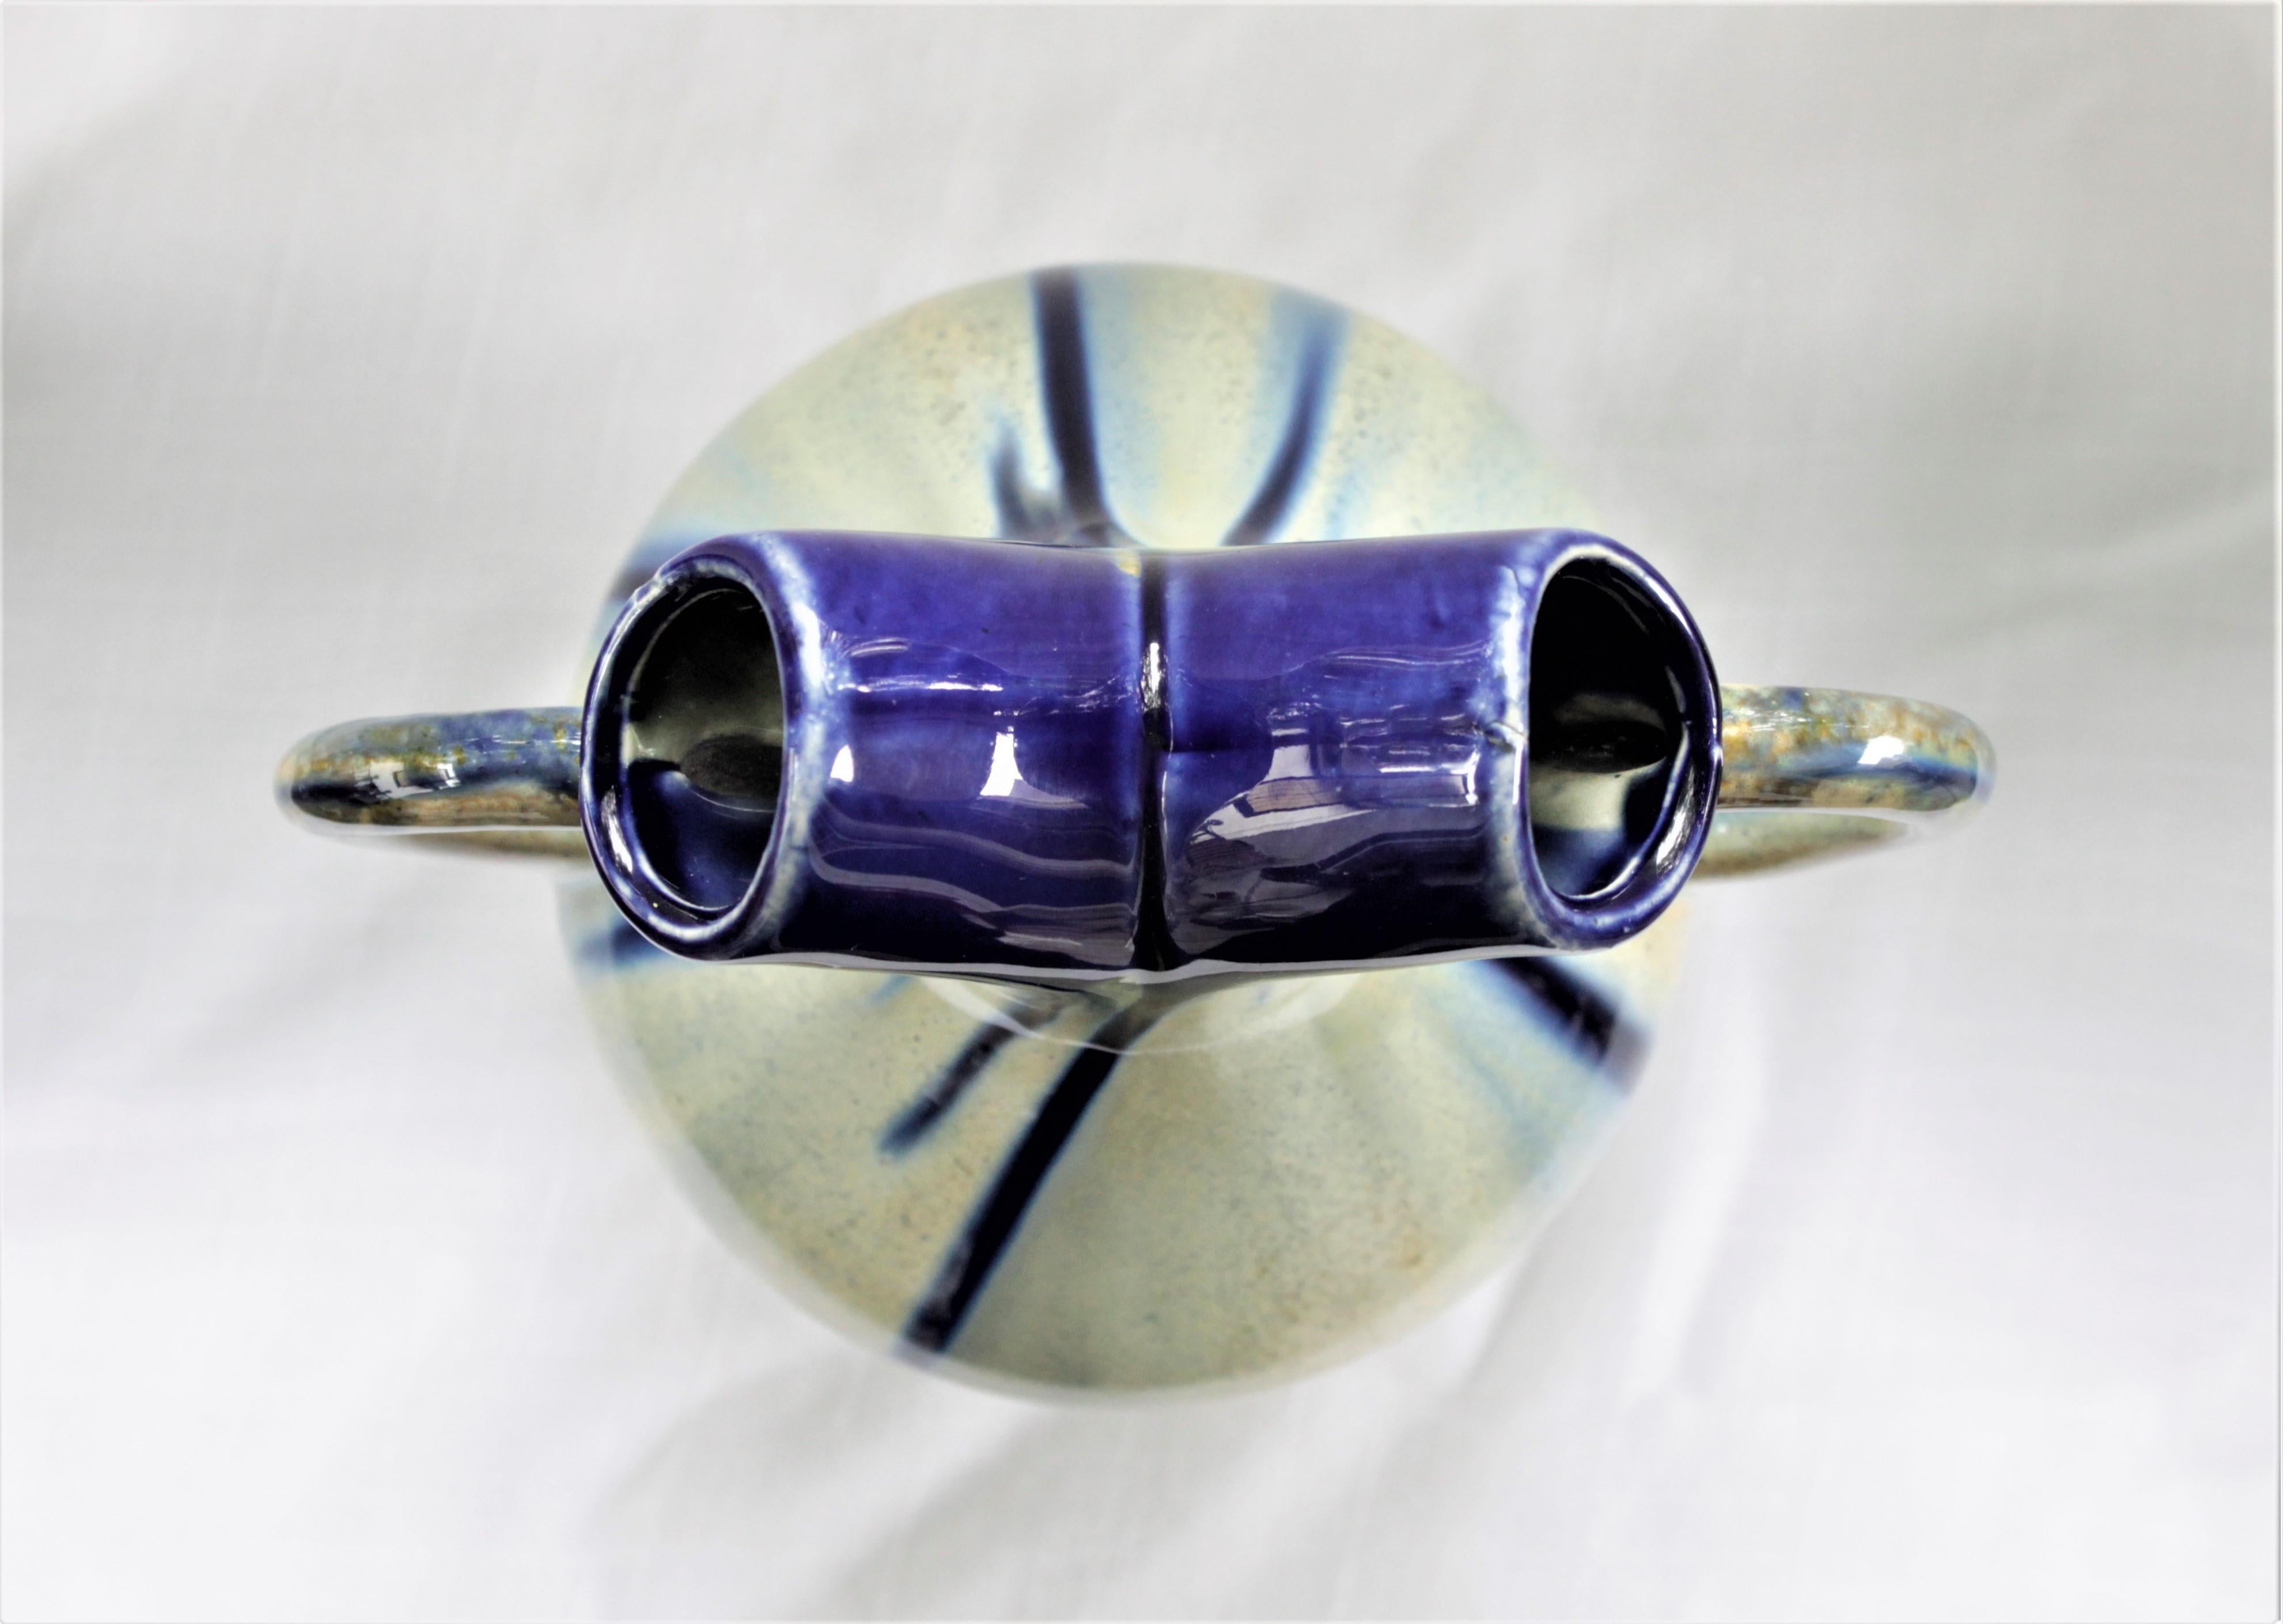 Belgian Art Deco Therin Pottery Co. Belgium Wedding Vase with Cobalt Blue Drip Glaze